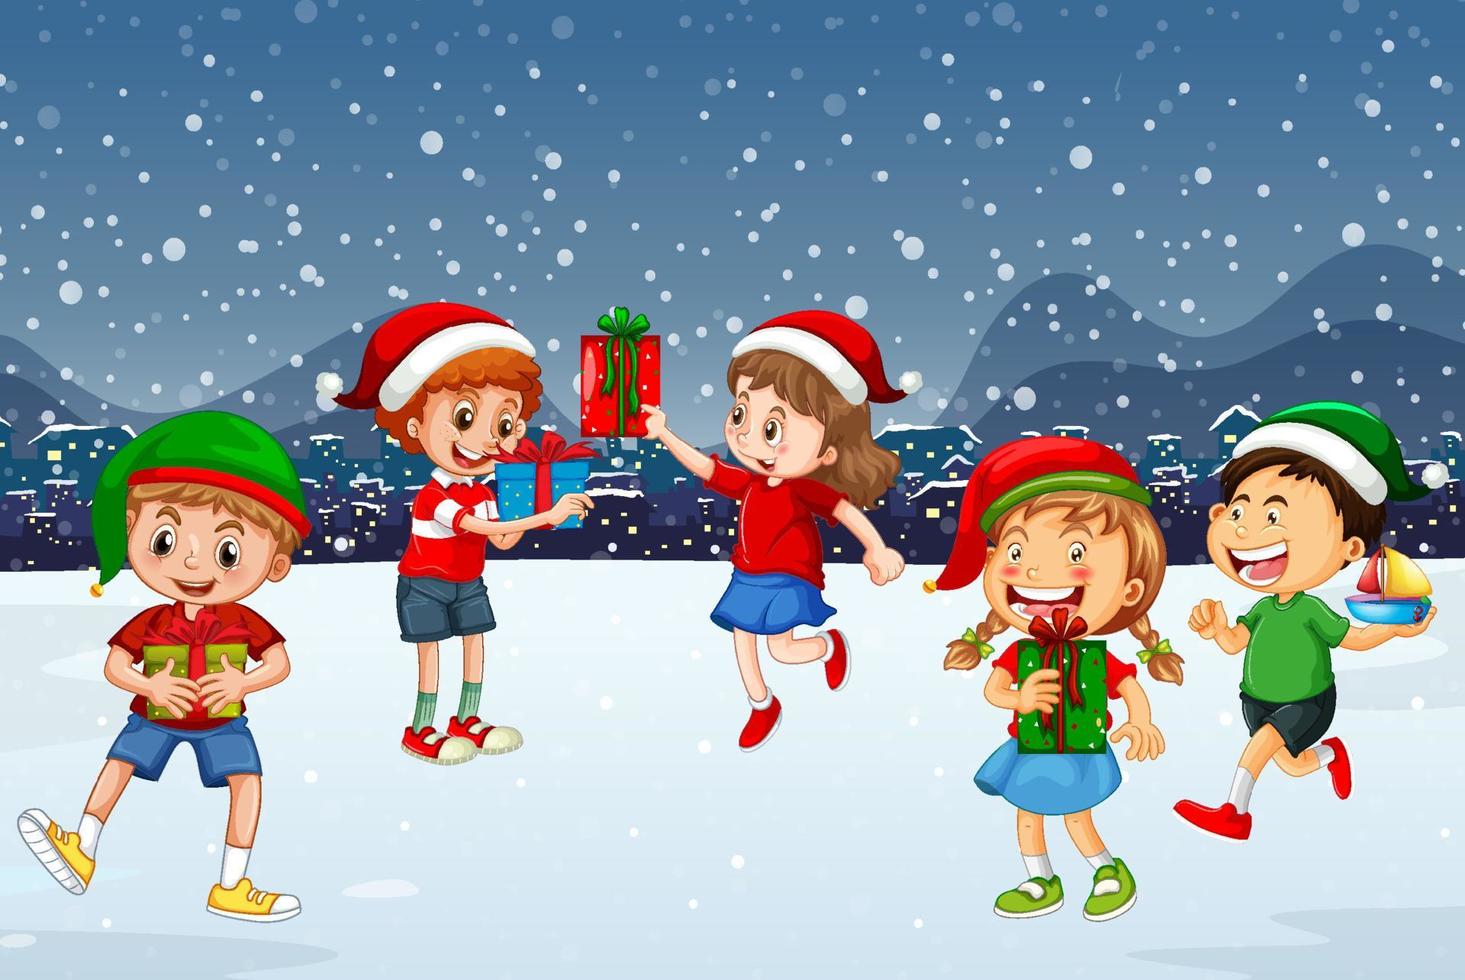 escena nocturna nevada con personajes de dibujos animados de navidad vector